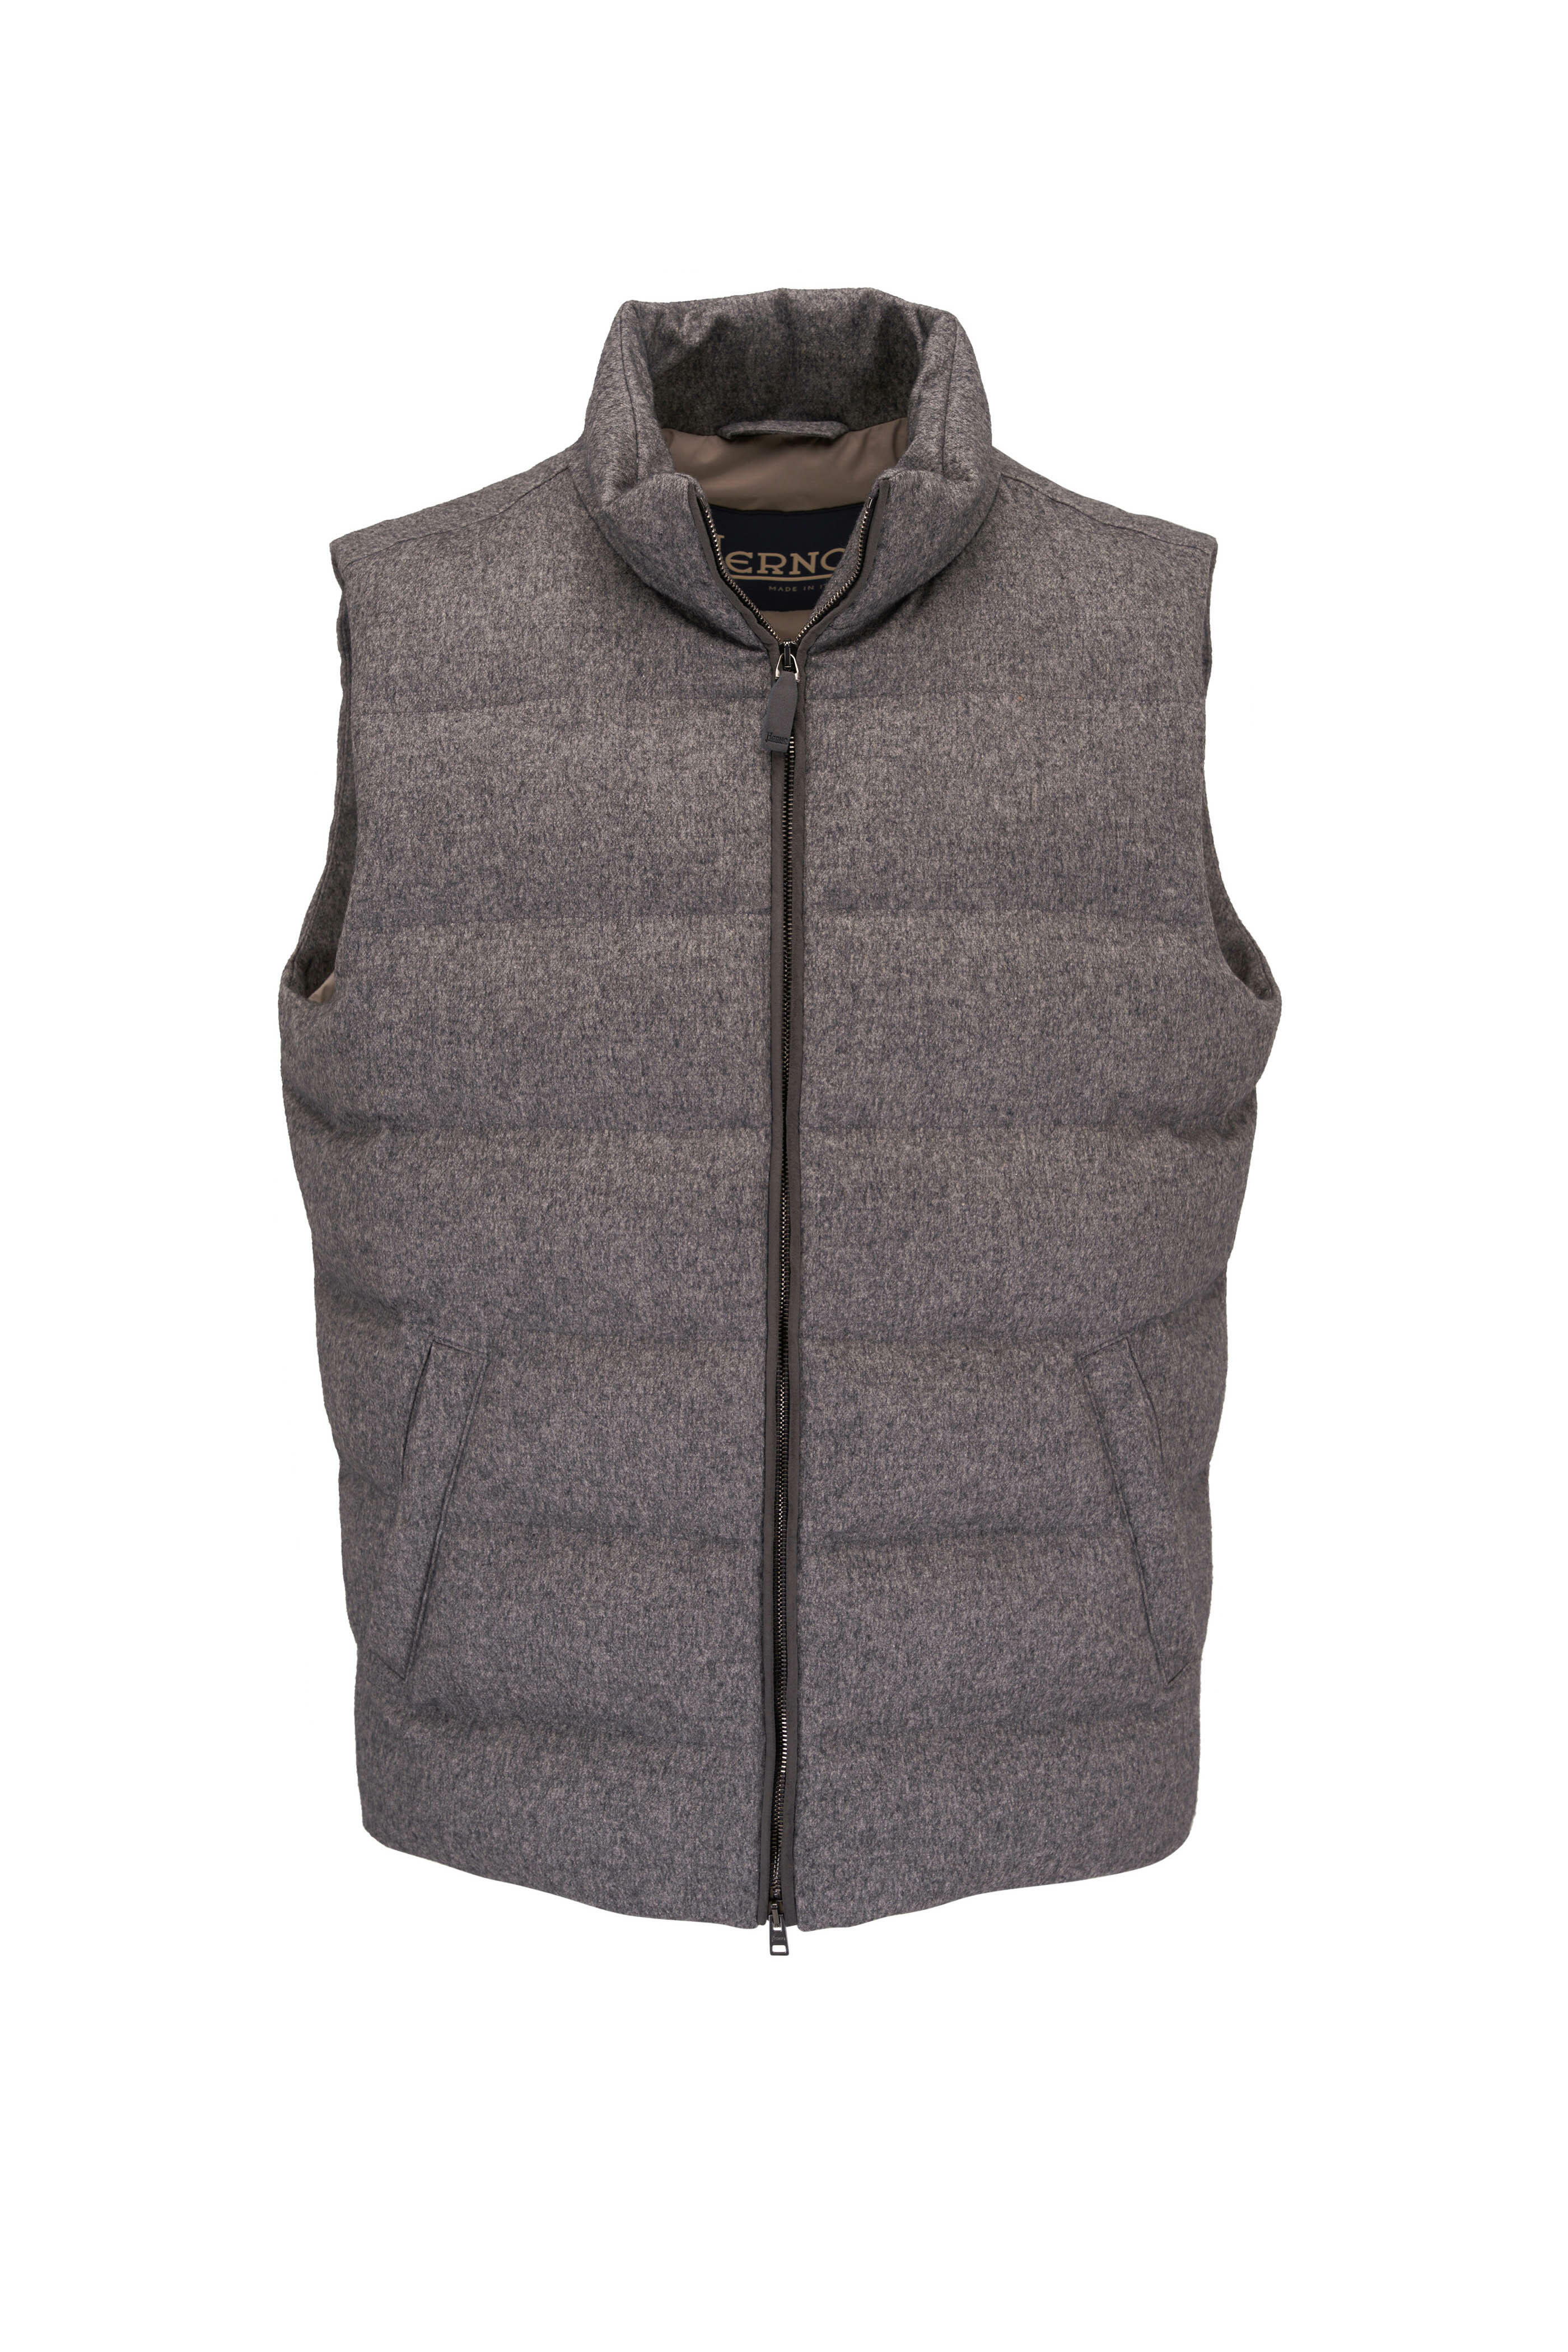 Herno - Grey Textured Silk & Cashmere Vest